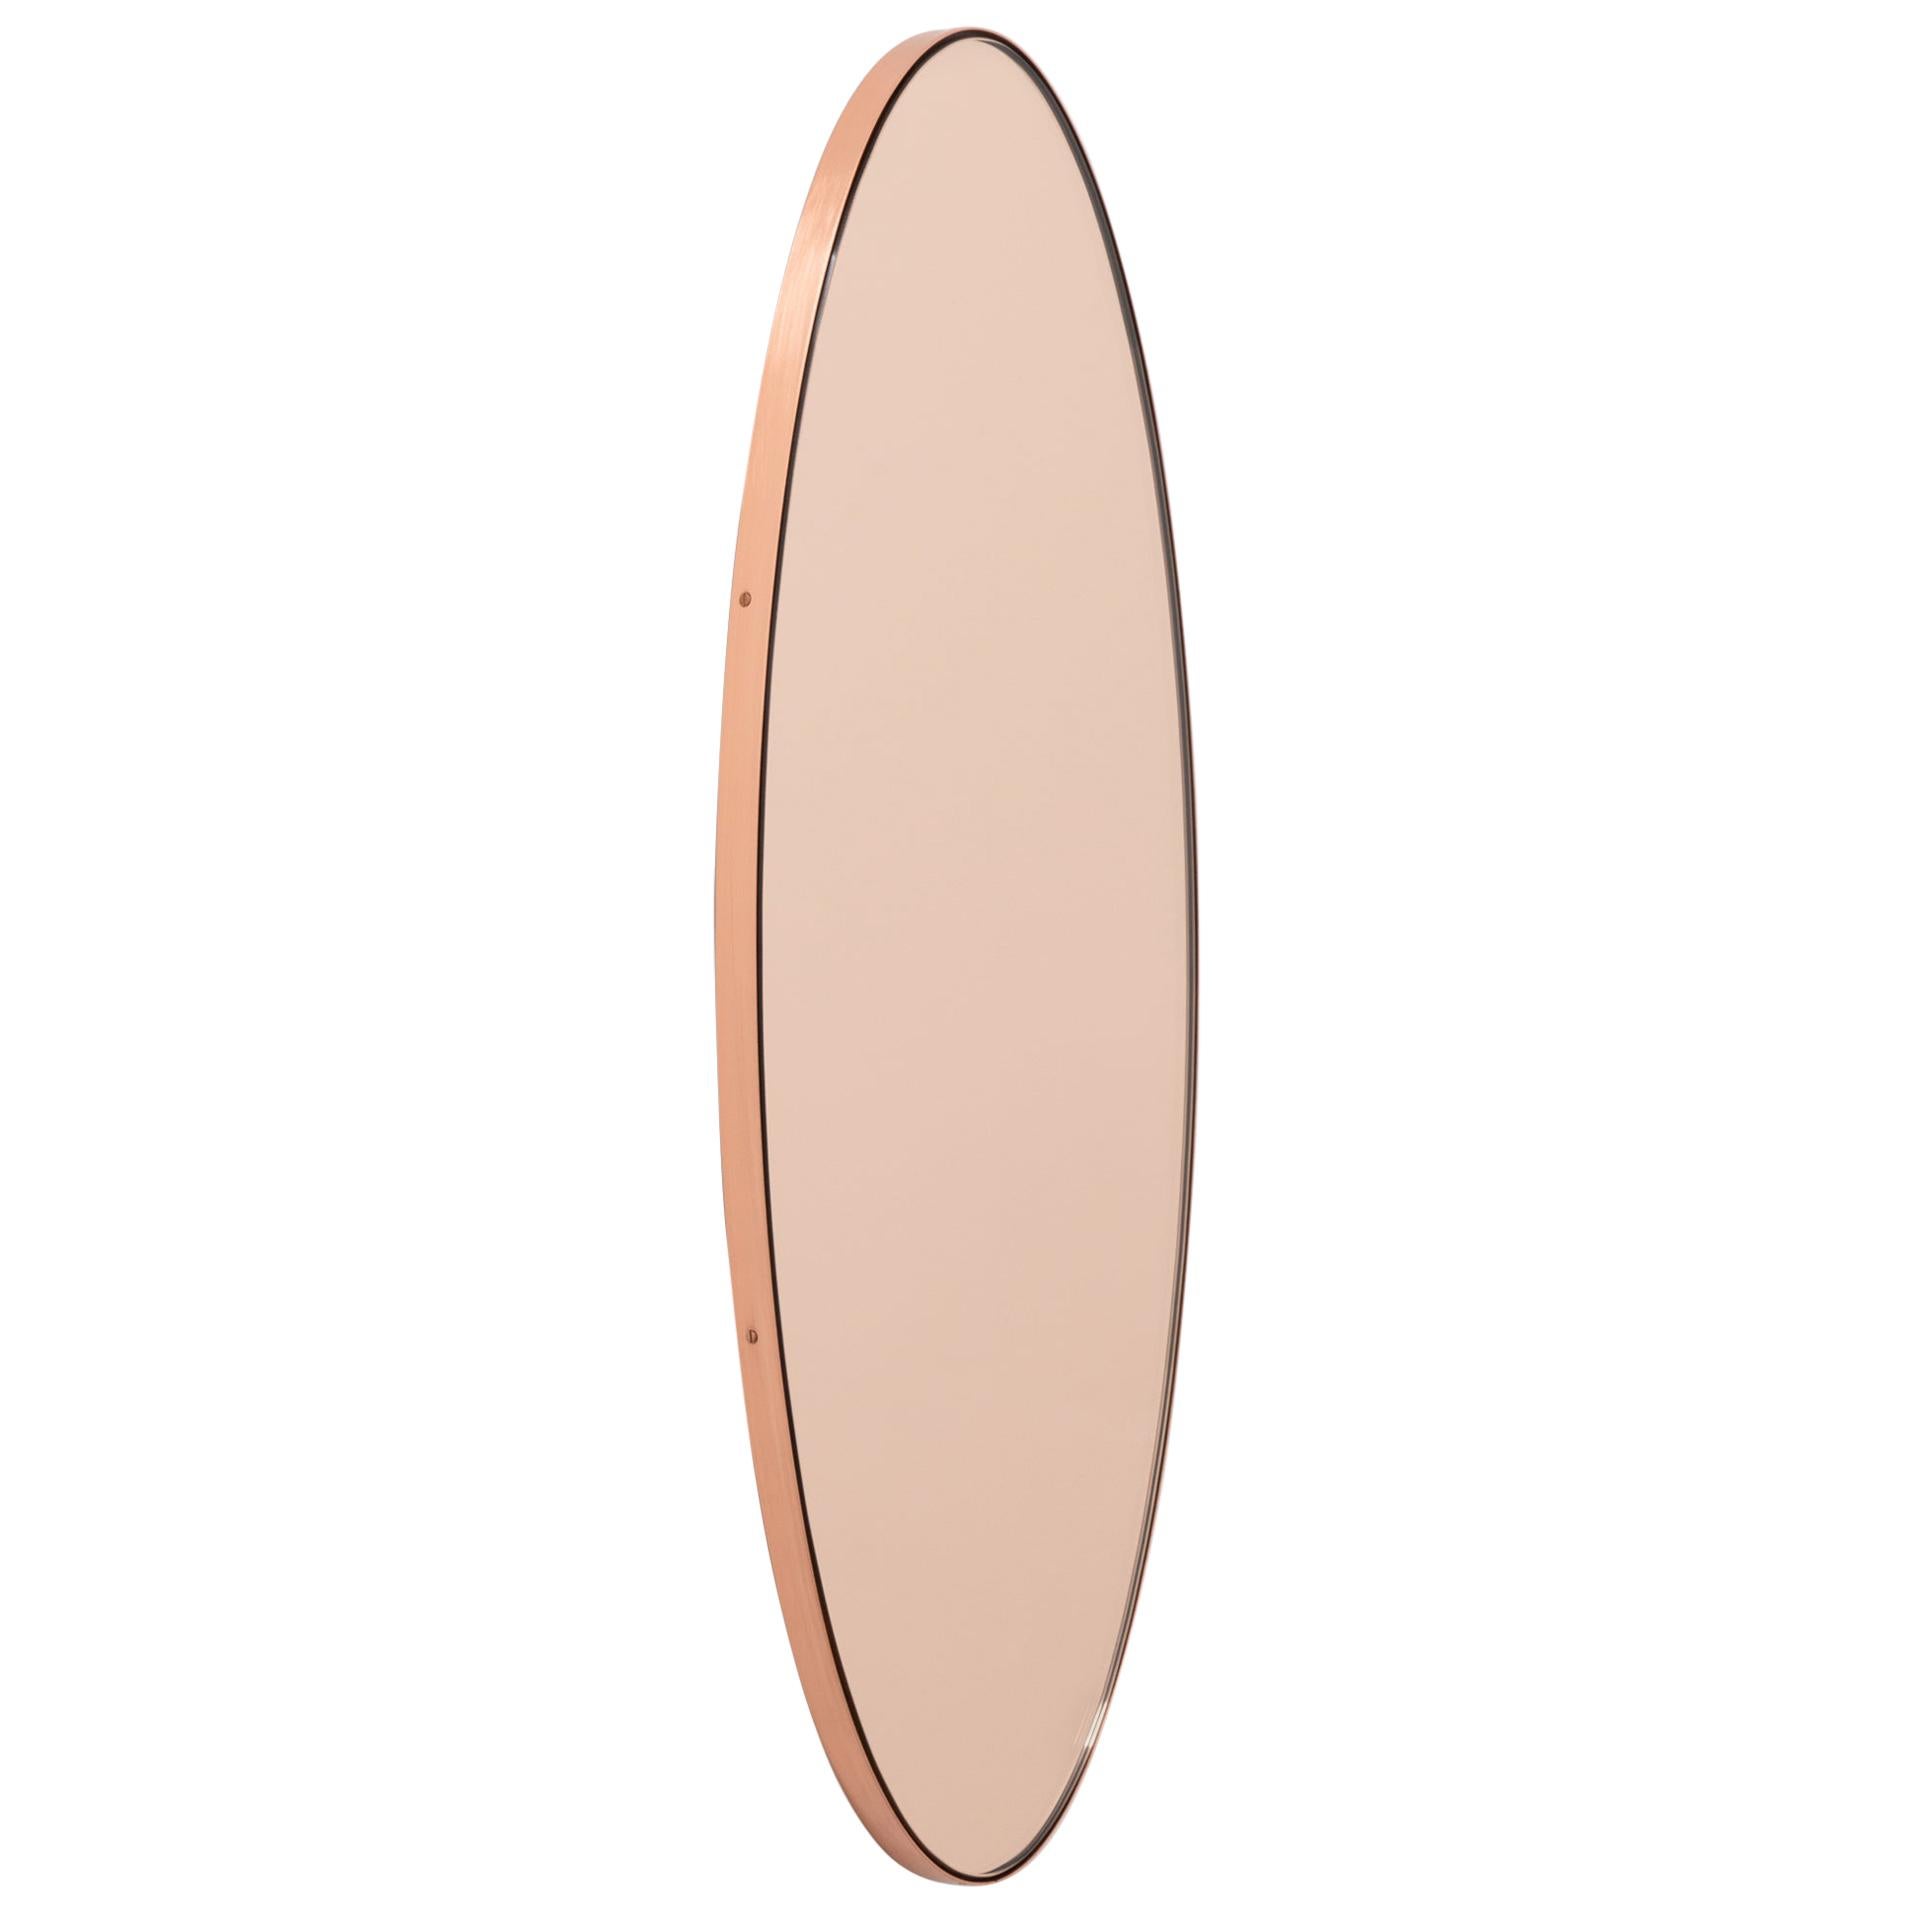 Ovalis Zeitgenössischer Ovalis-Spiegel in ovaler Form aus Roségold mit Kupferrahmen, klein